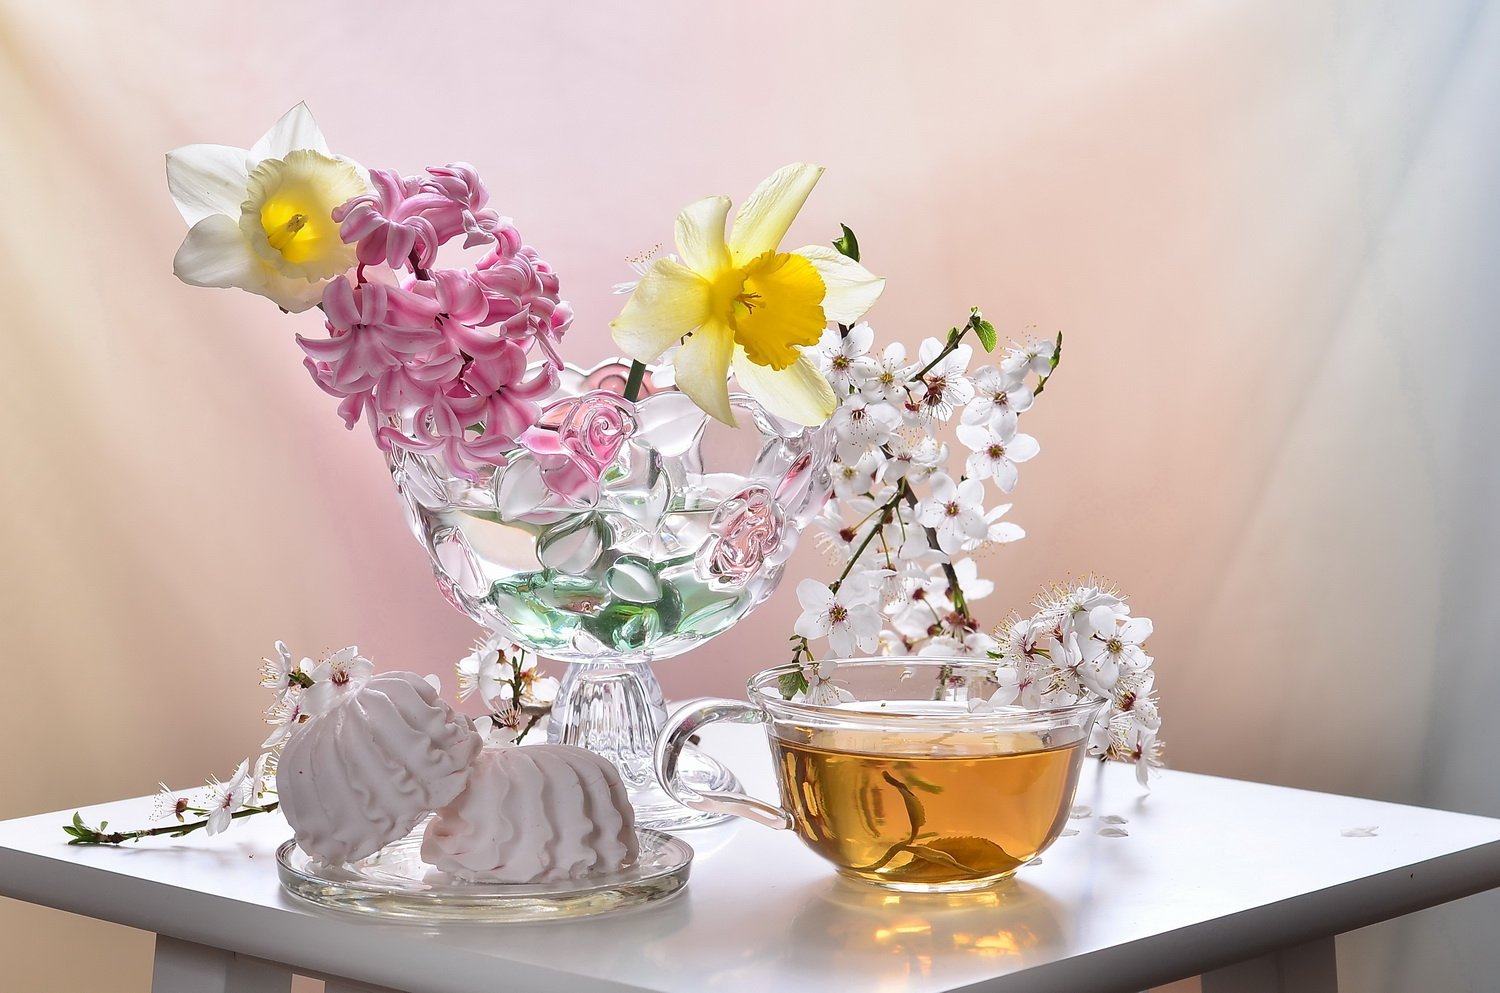 Весенняя чашка чая. Весенний натюрморт. Утренние цветы. Натюрморт с весенними цветами. Весеннее настроение.